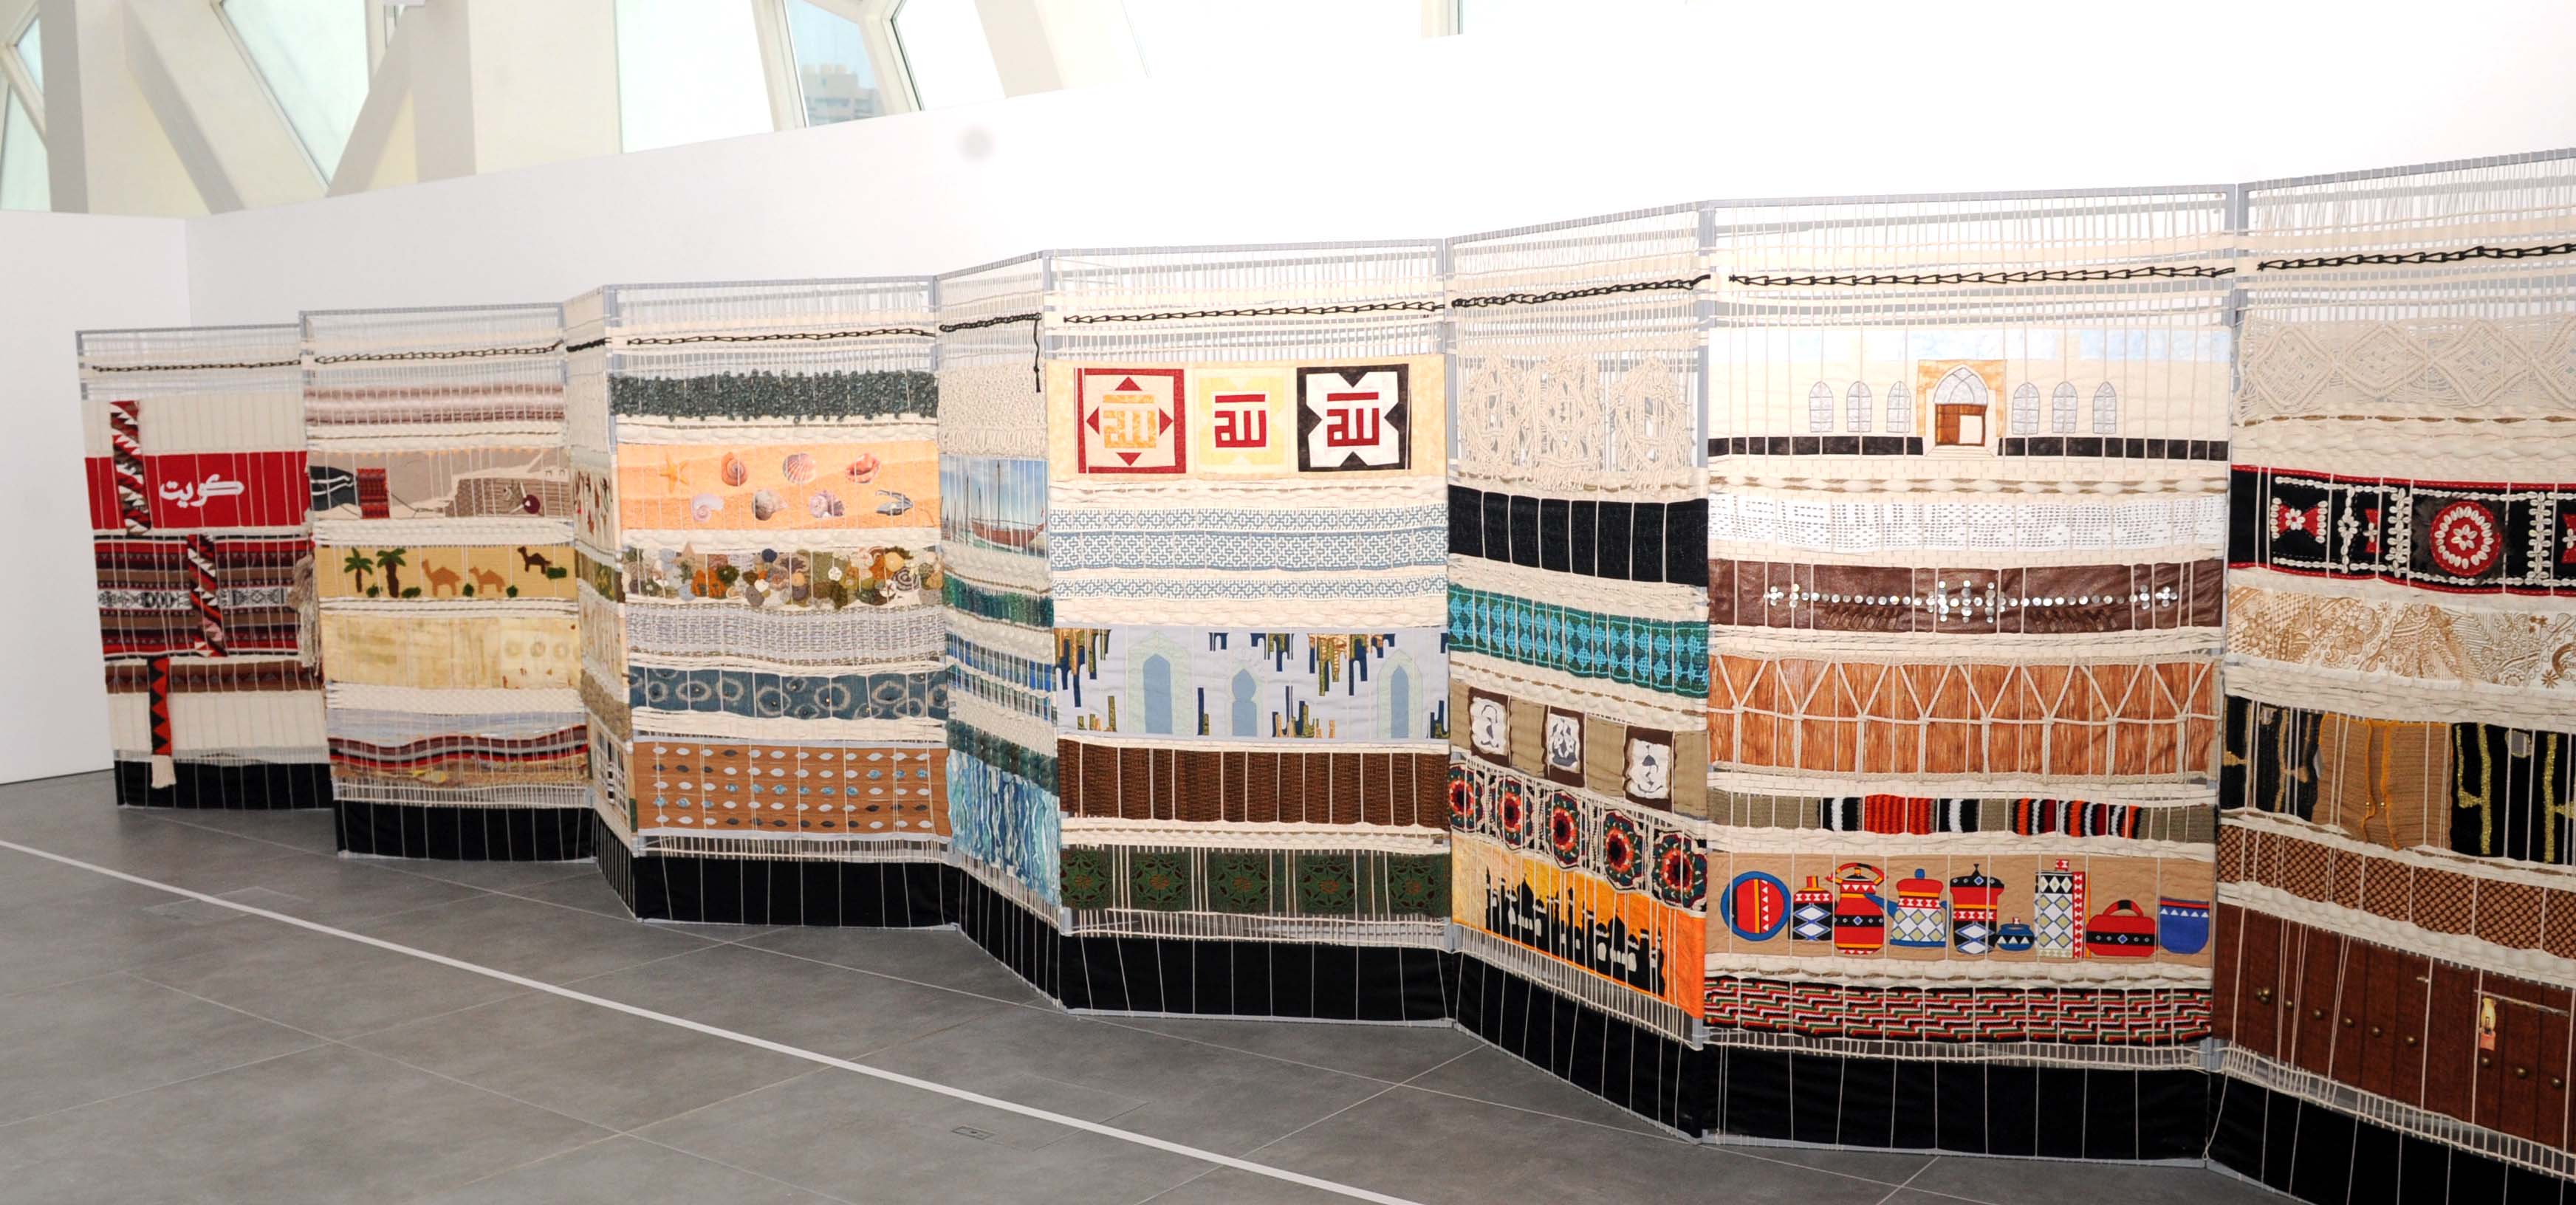 حكاية النسيج قصة فن الحياكة التقليدي في الكويت على شكل جدار بانورامي